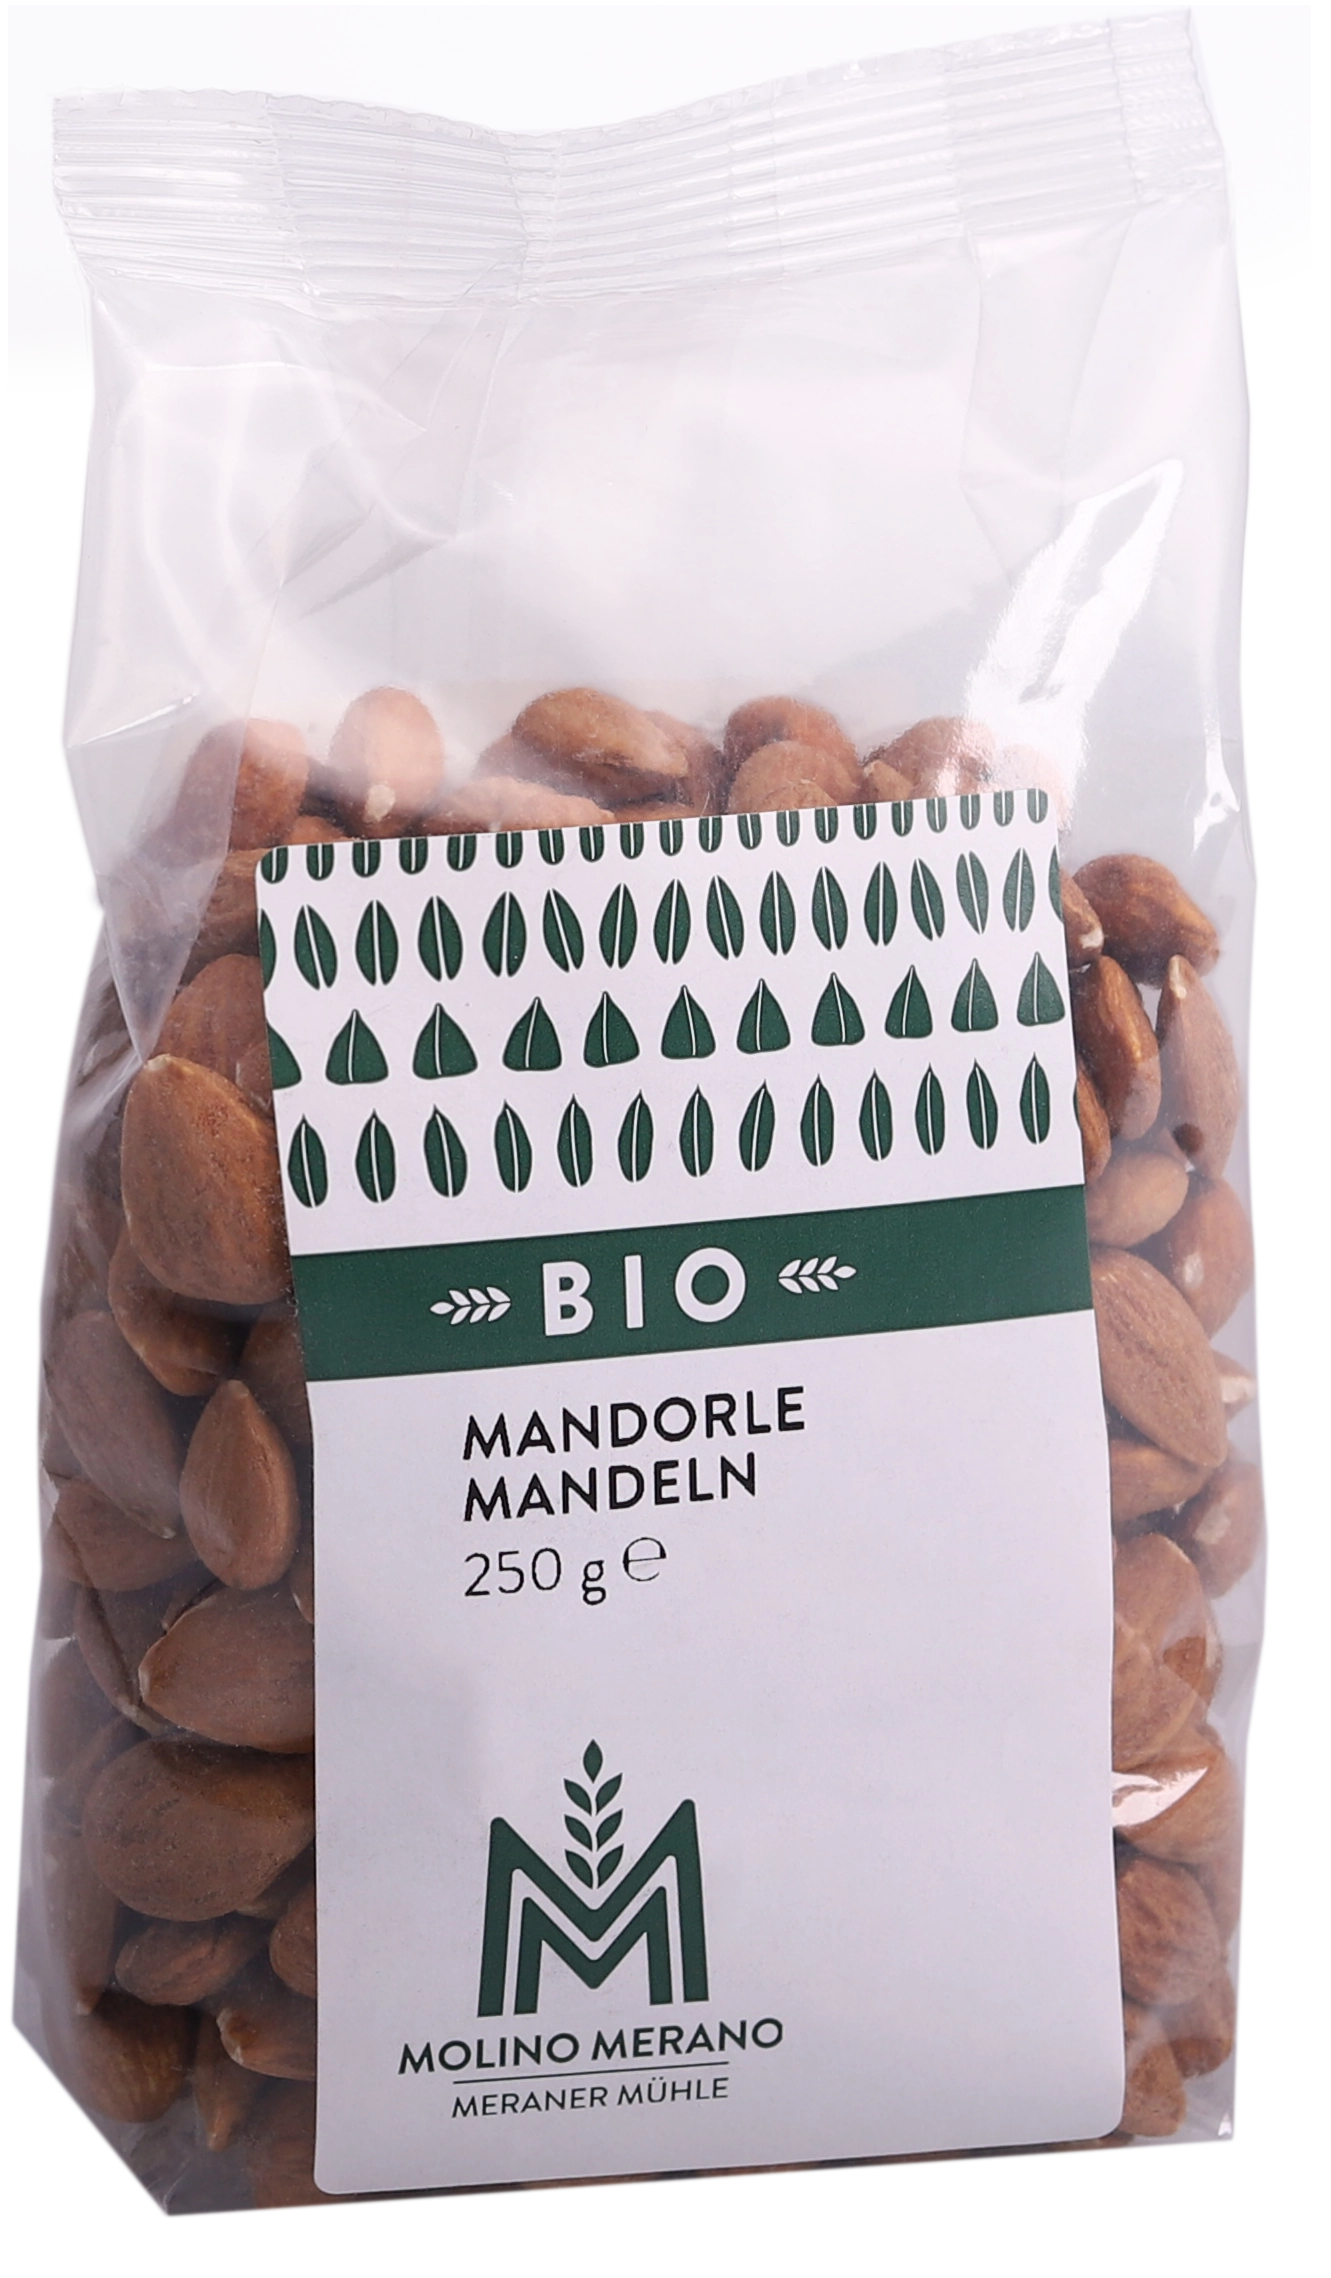 Organic almonds